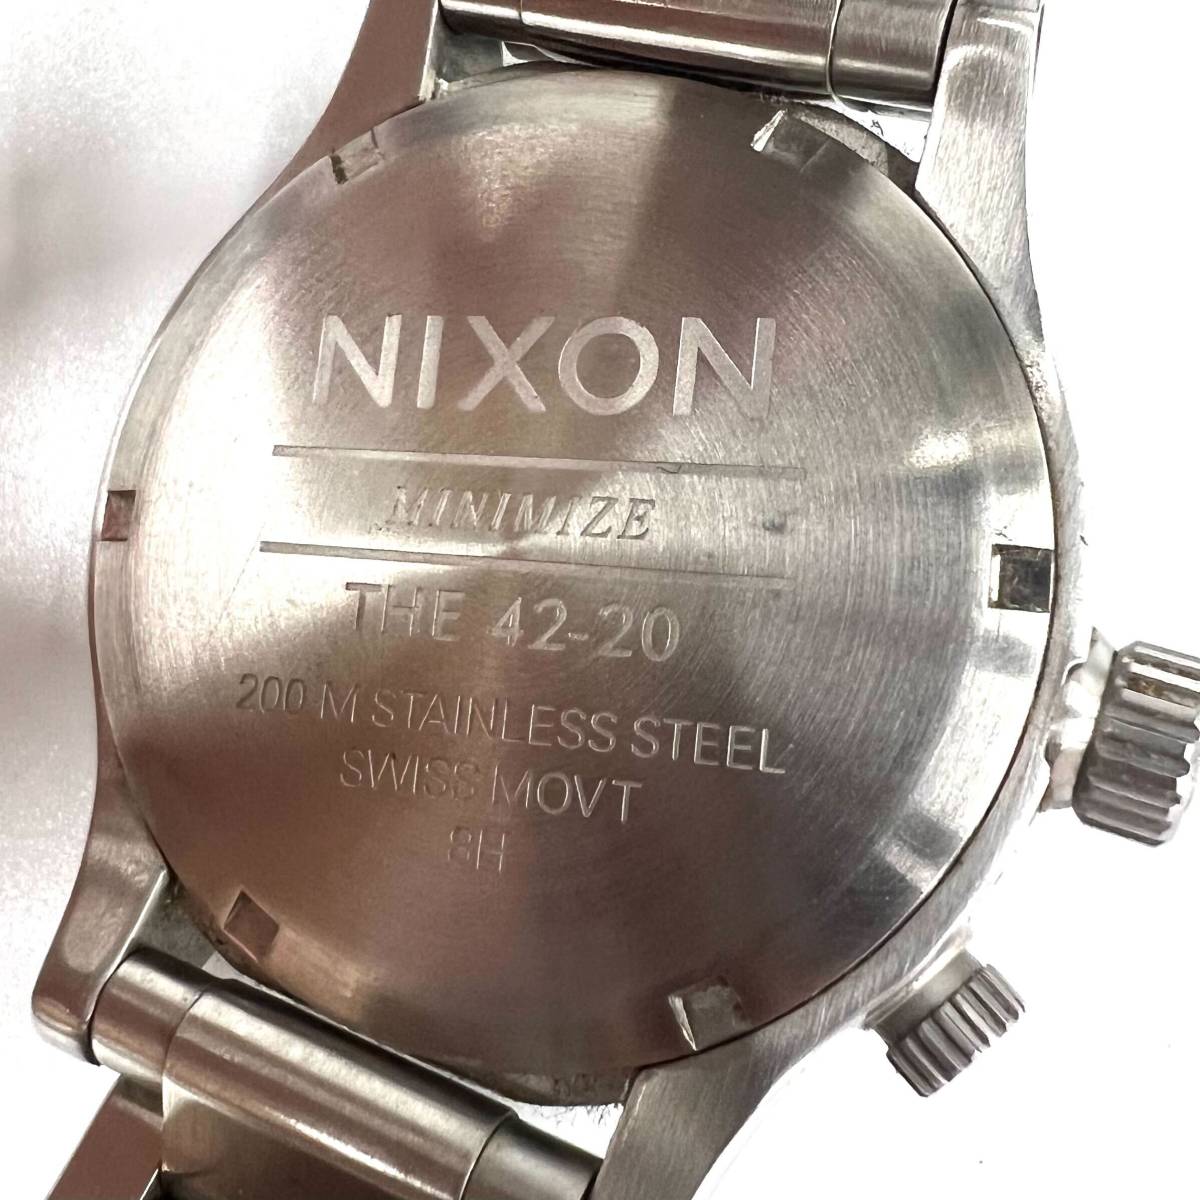 ★おすすめ品★ 美品 NIXON ニクソン MINIMIZE THE 42-20 クロノグラフ デイト メンズ腕時計 ブラック文字盤 動作未確認　SAHS1024-1_画像7